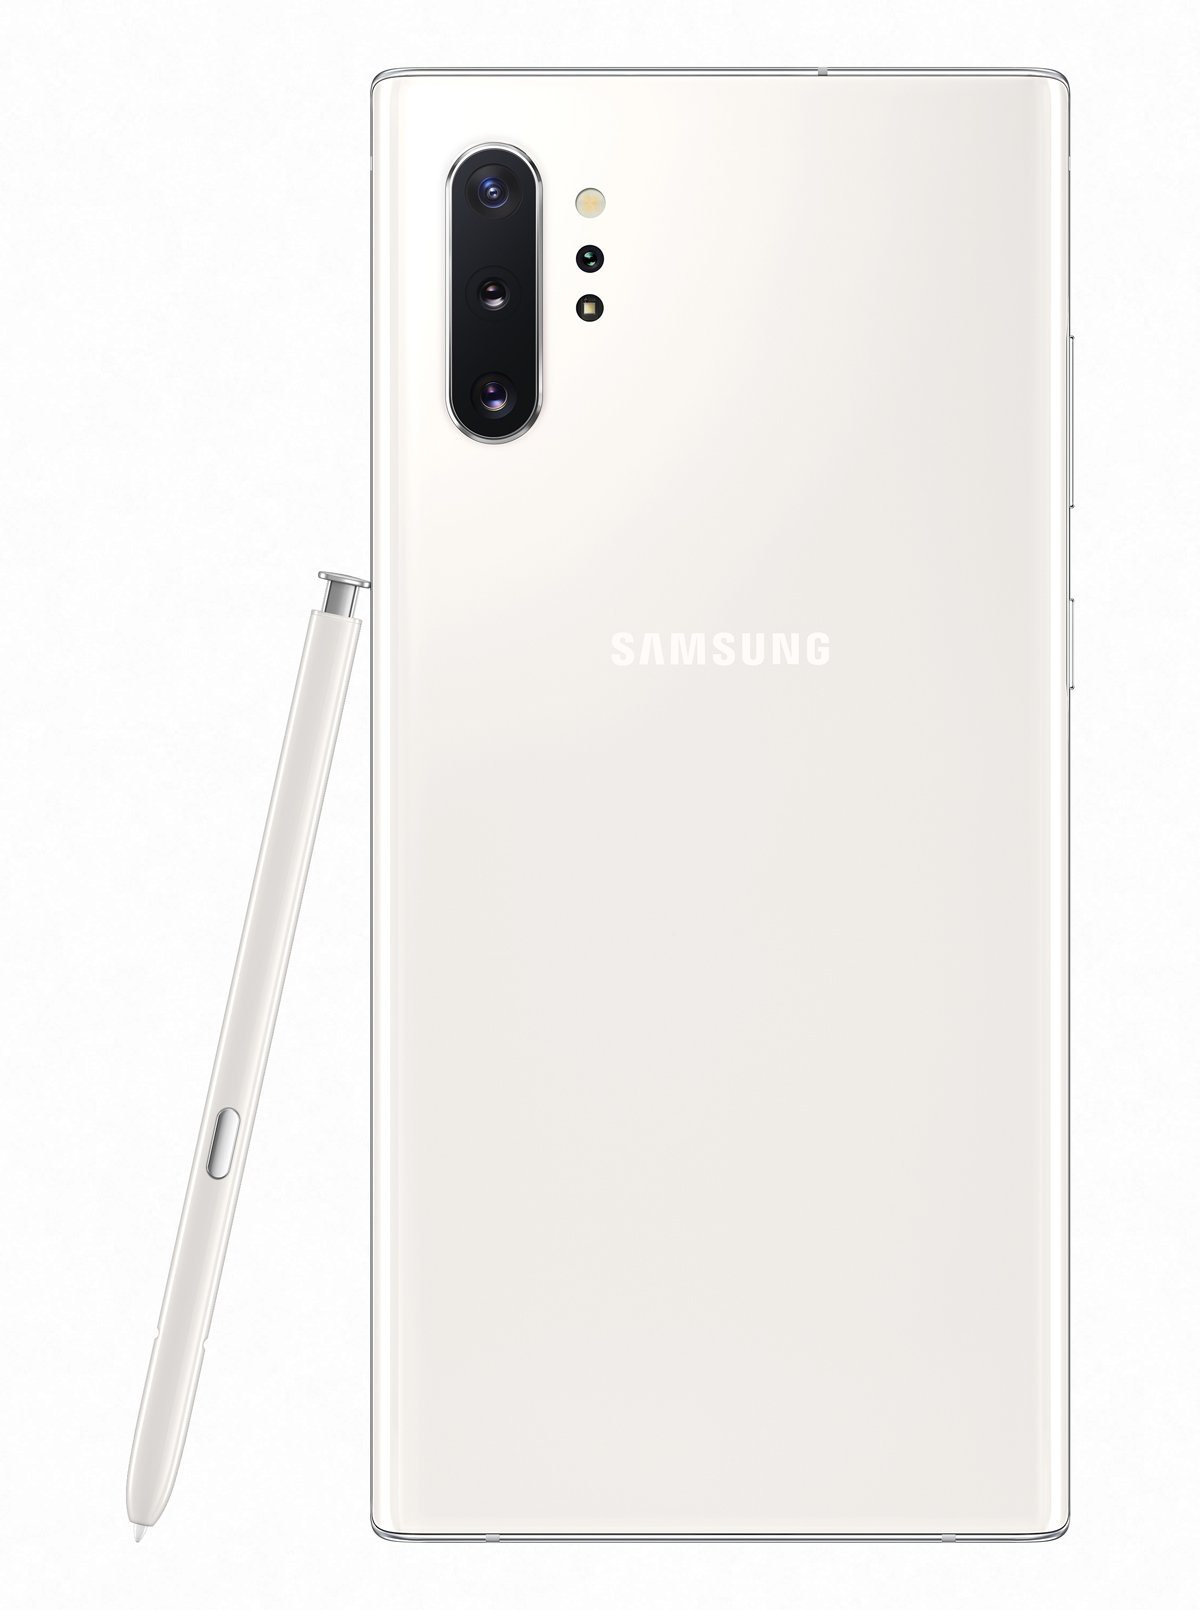 Samsung Galaxy Note 10+ Обзор